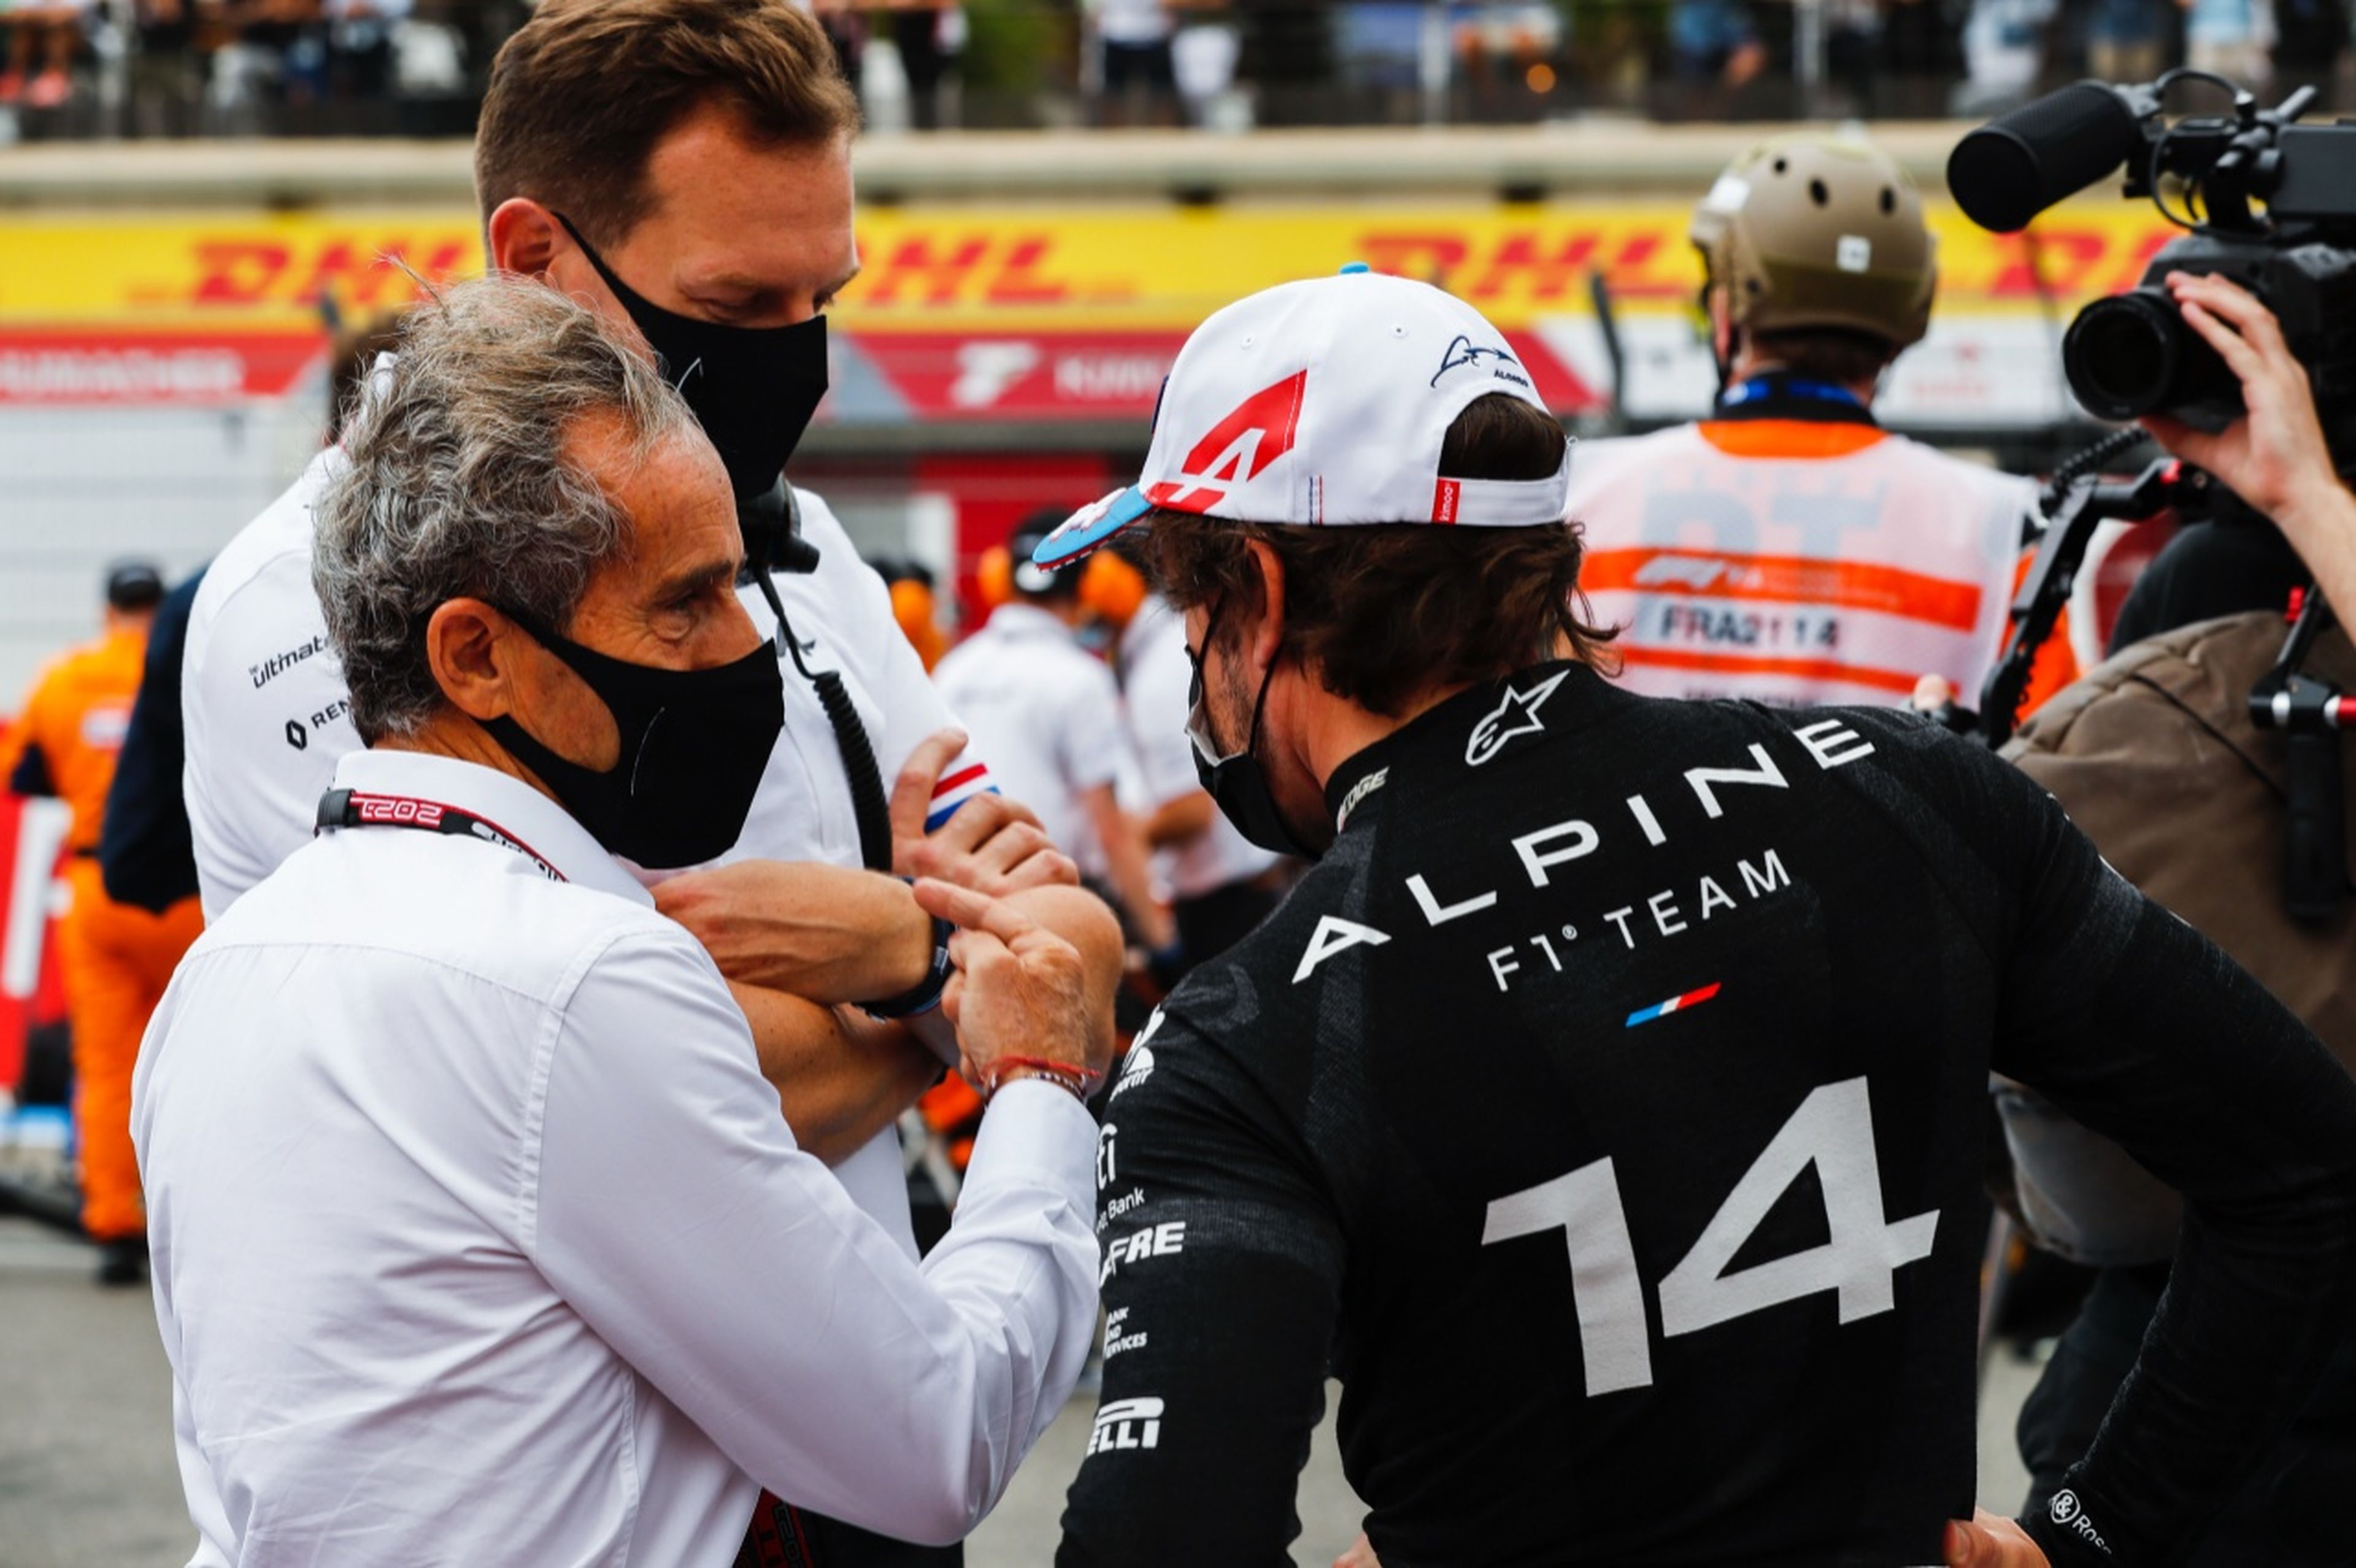 Prost y Alonso en la parrilla de salida de F1